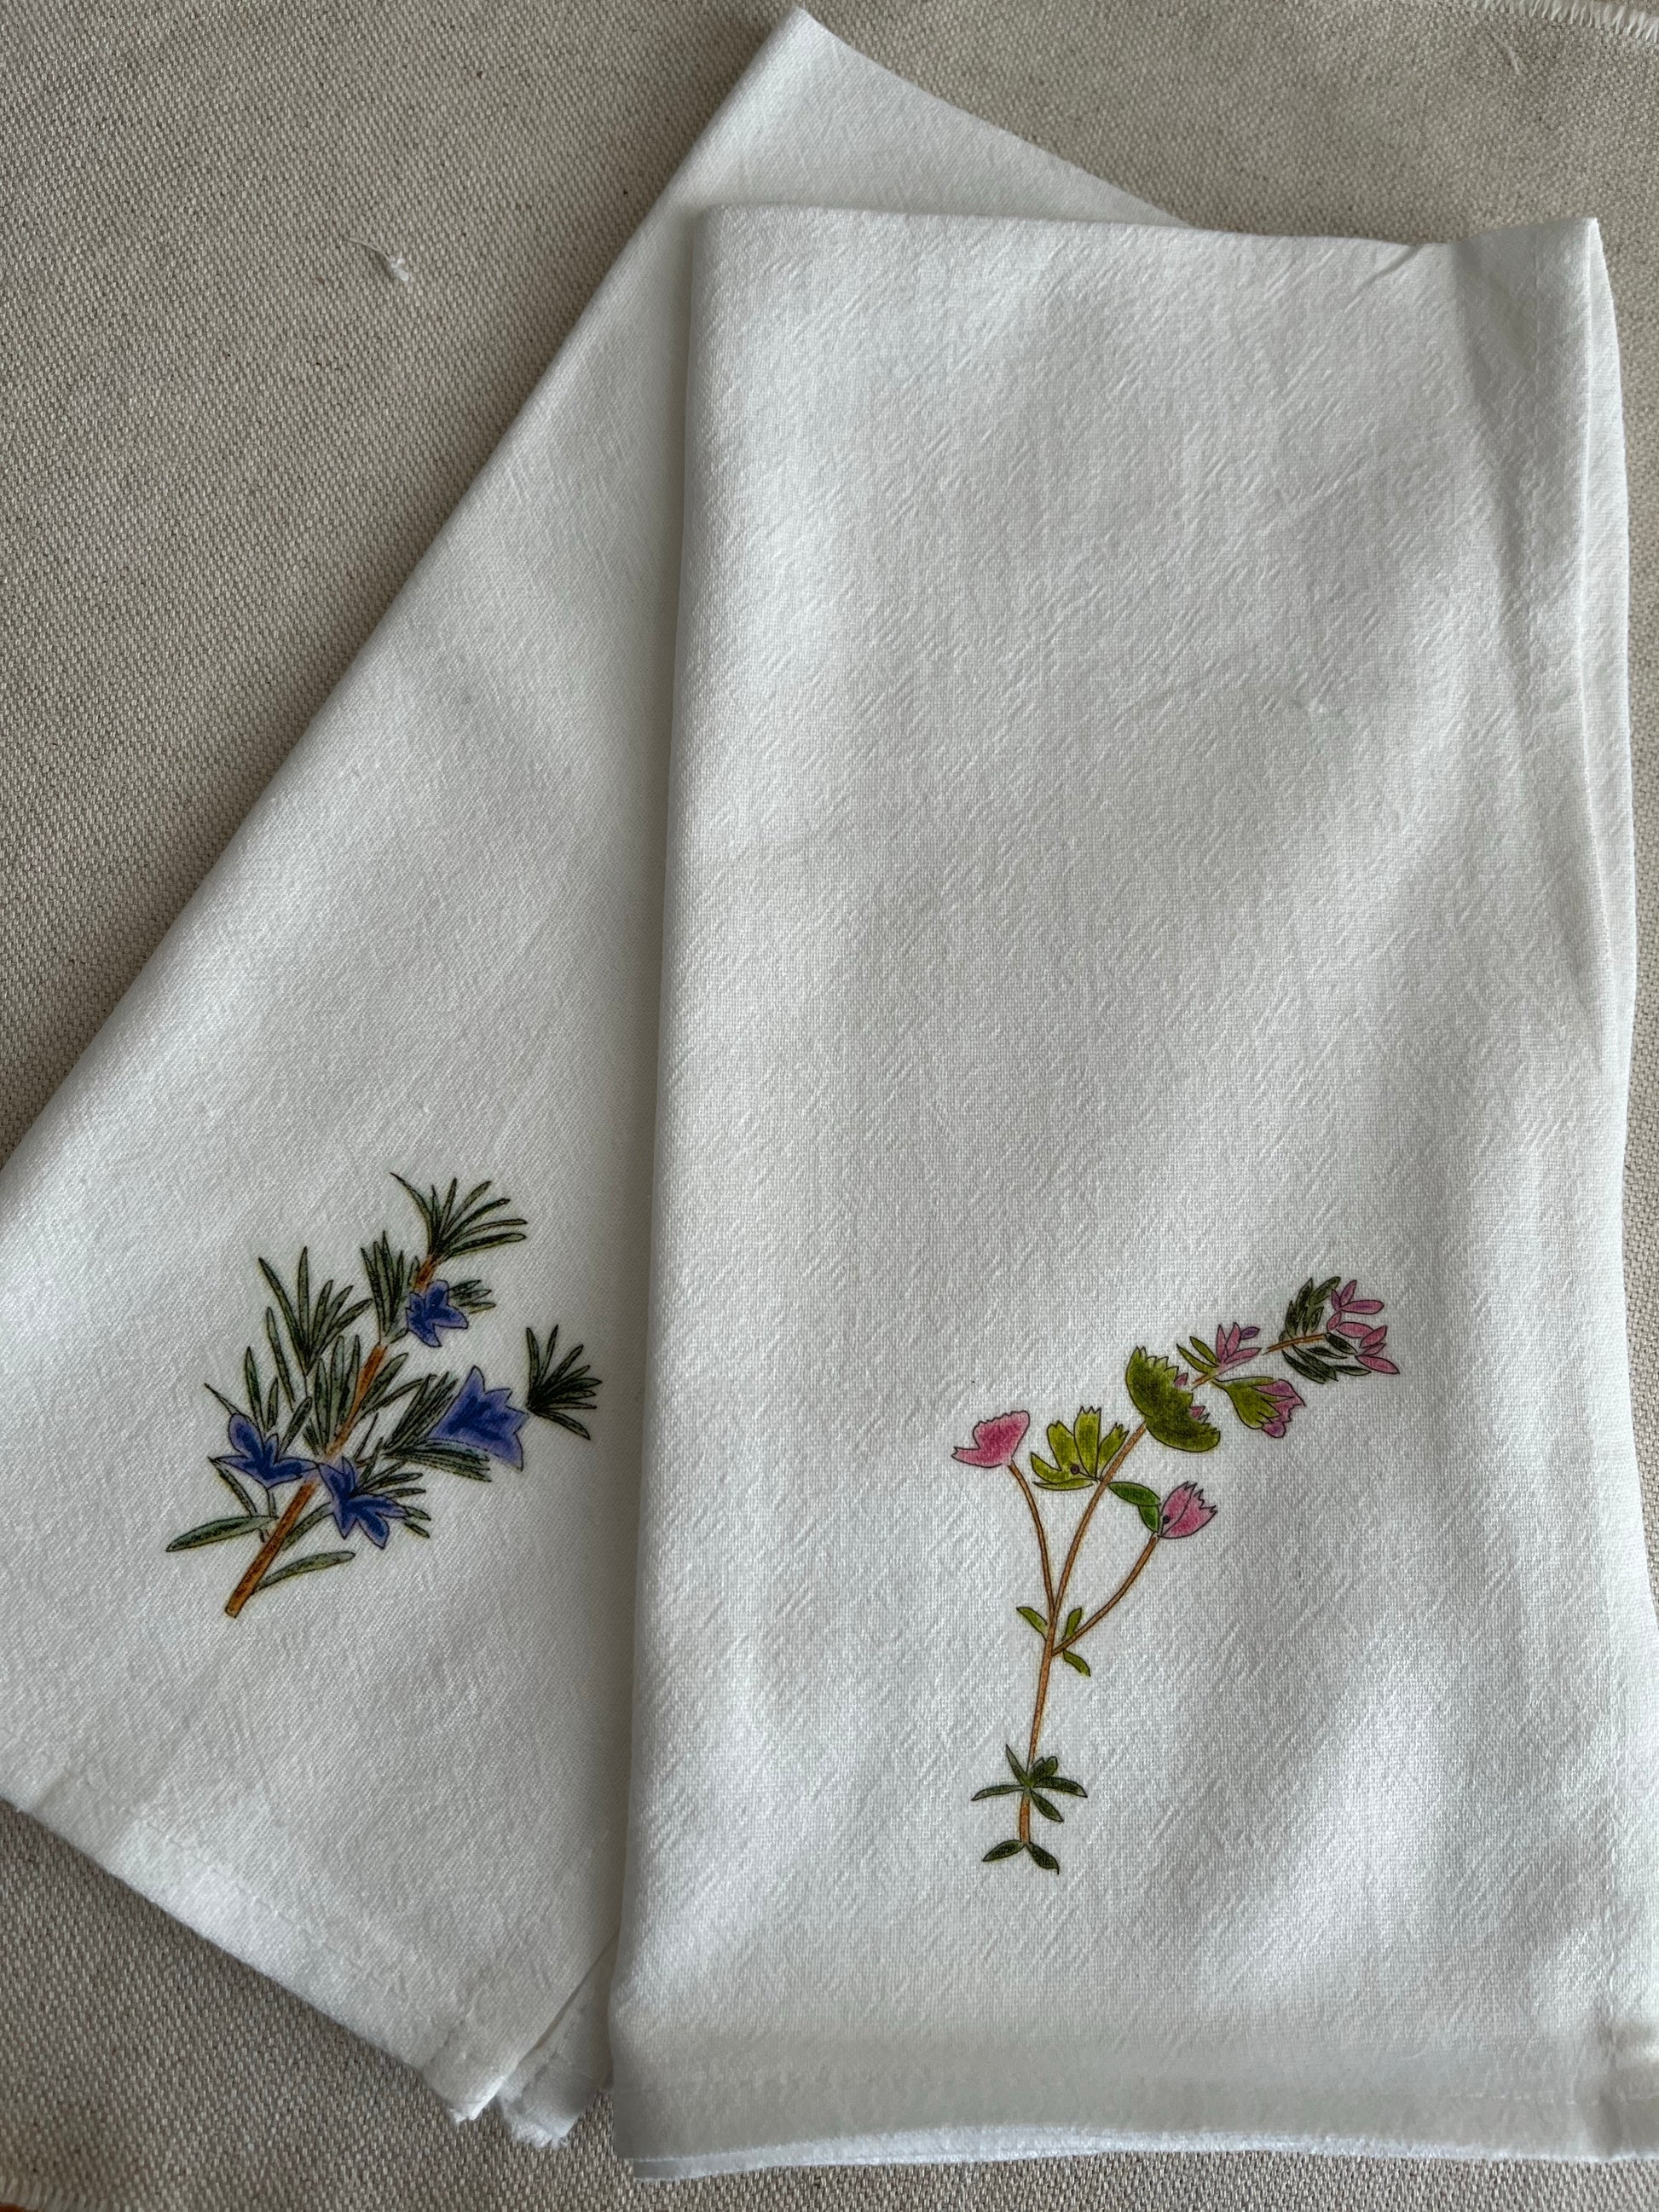 Rosemary & Thyme Botanical Cotton Napkin Set.